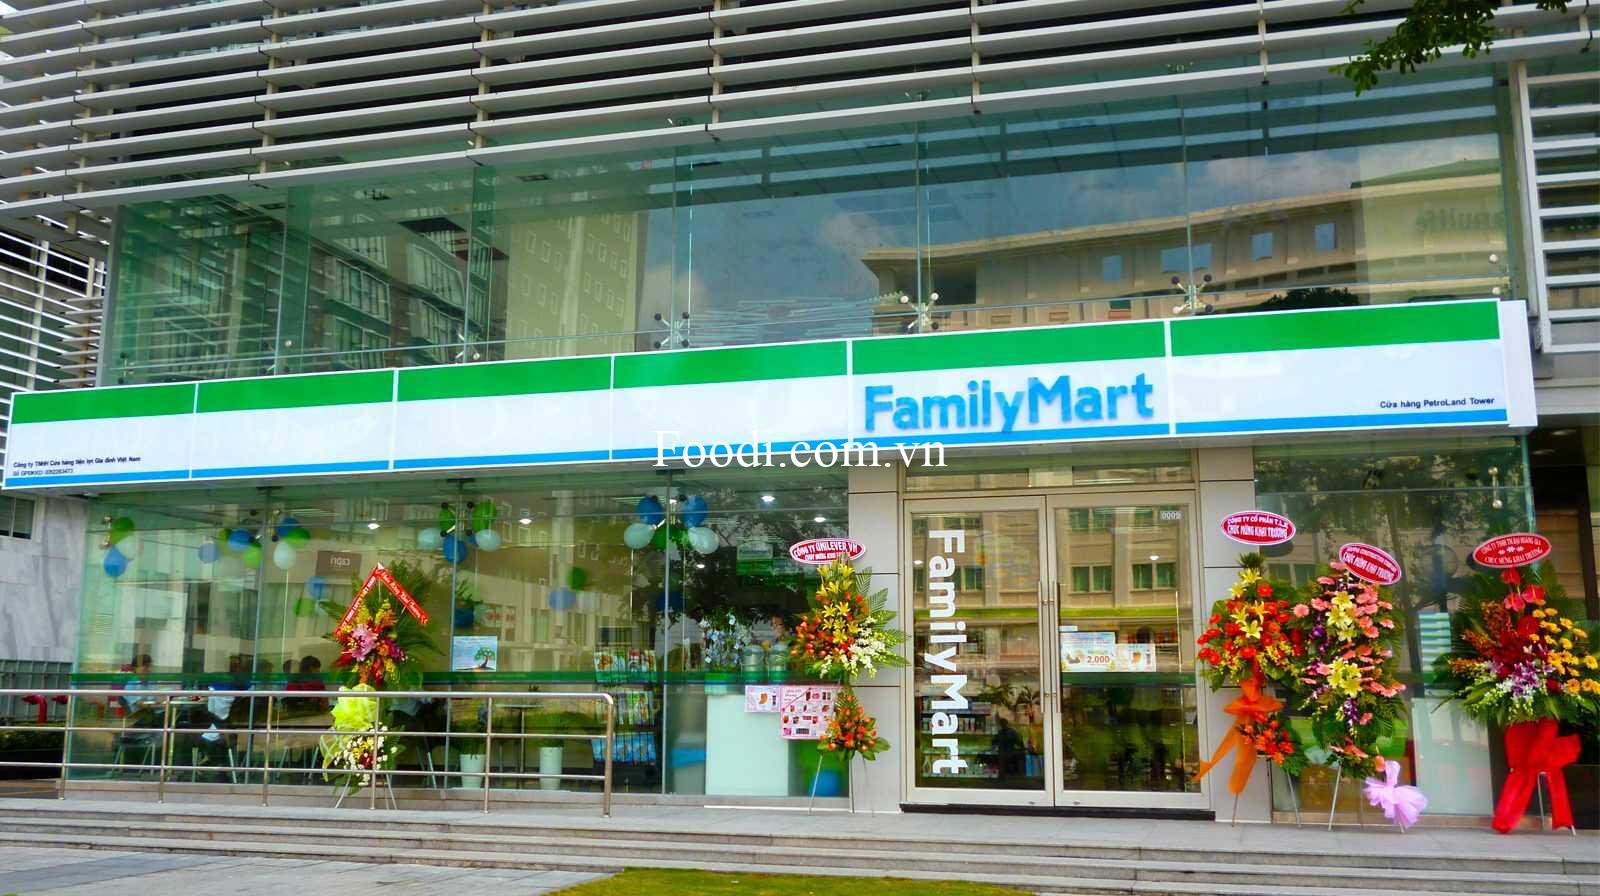 20 cửa hàng tiện lợi hiện đại ở Sài Gòn - TP.HCM nổi tiếng